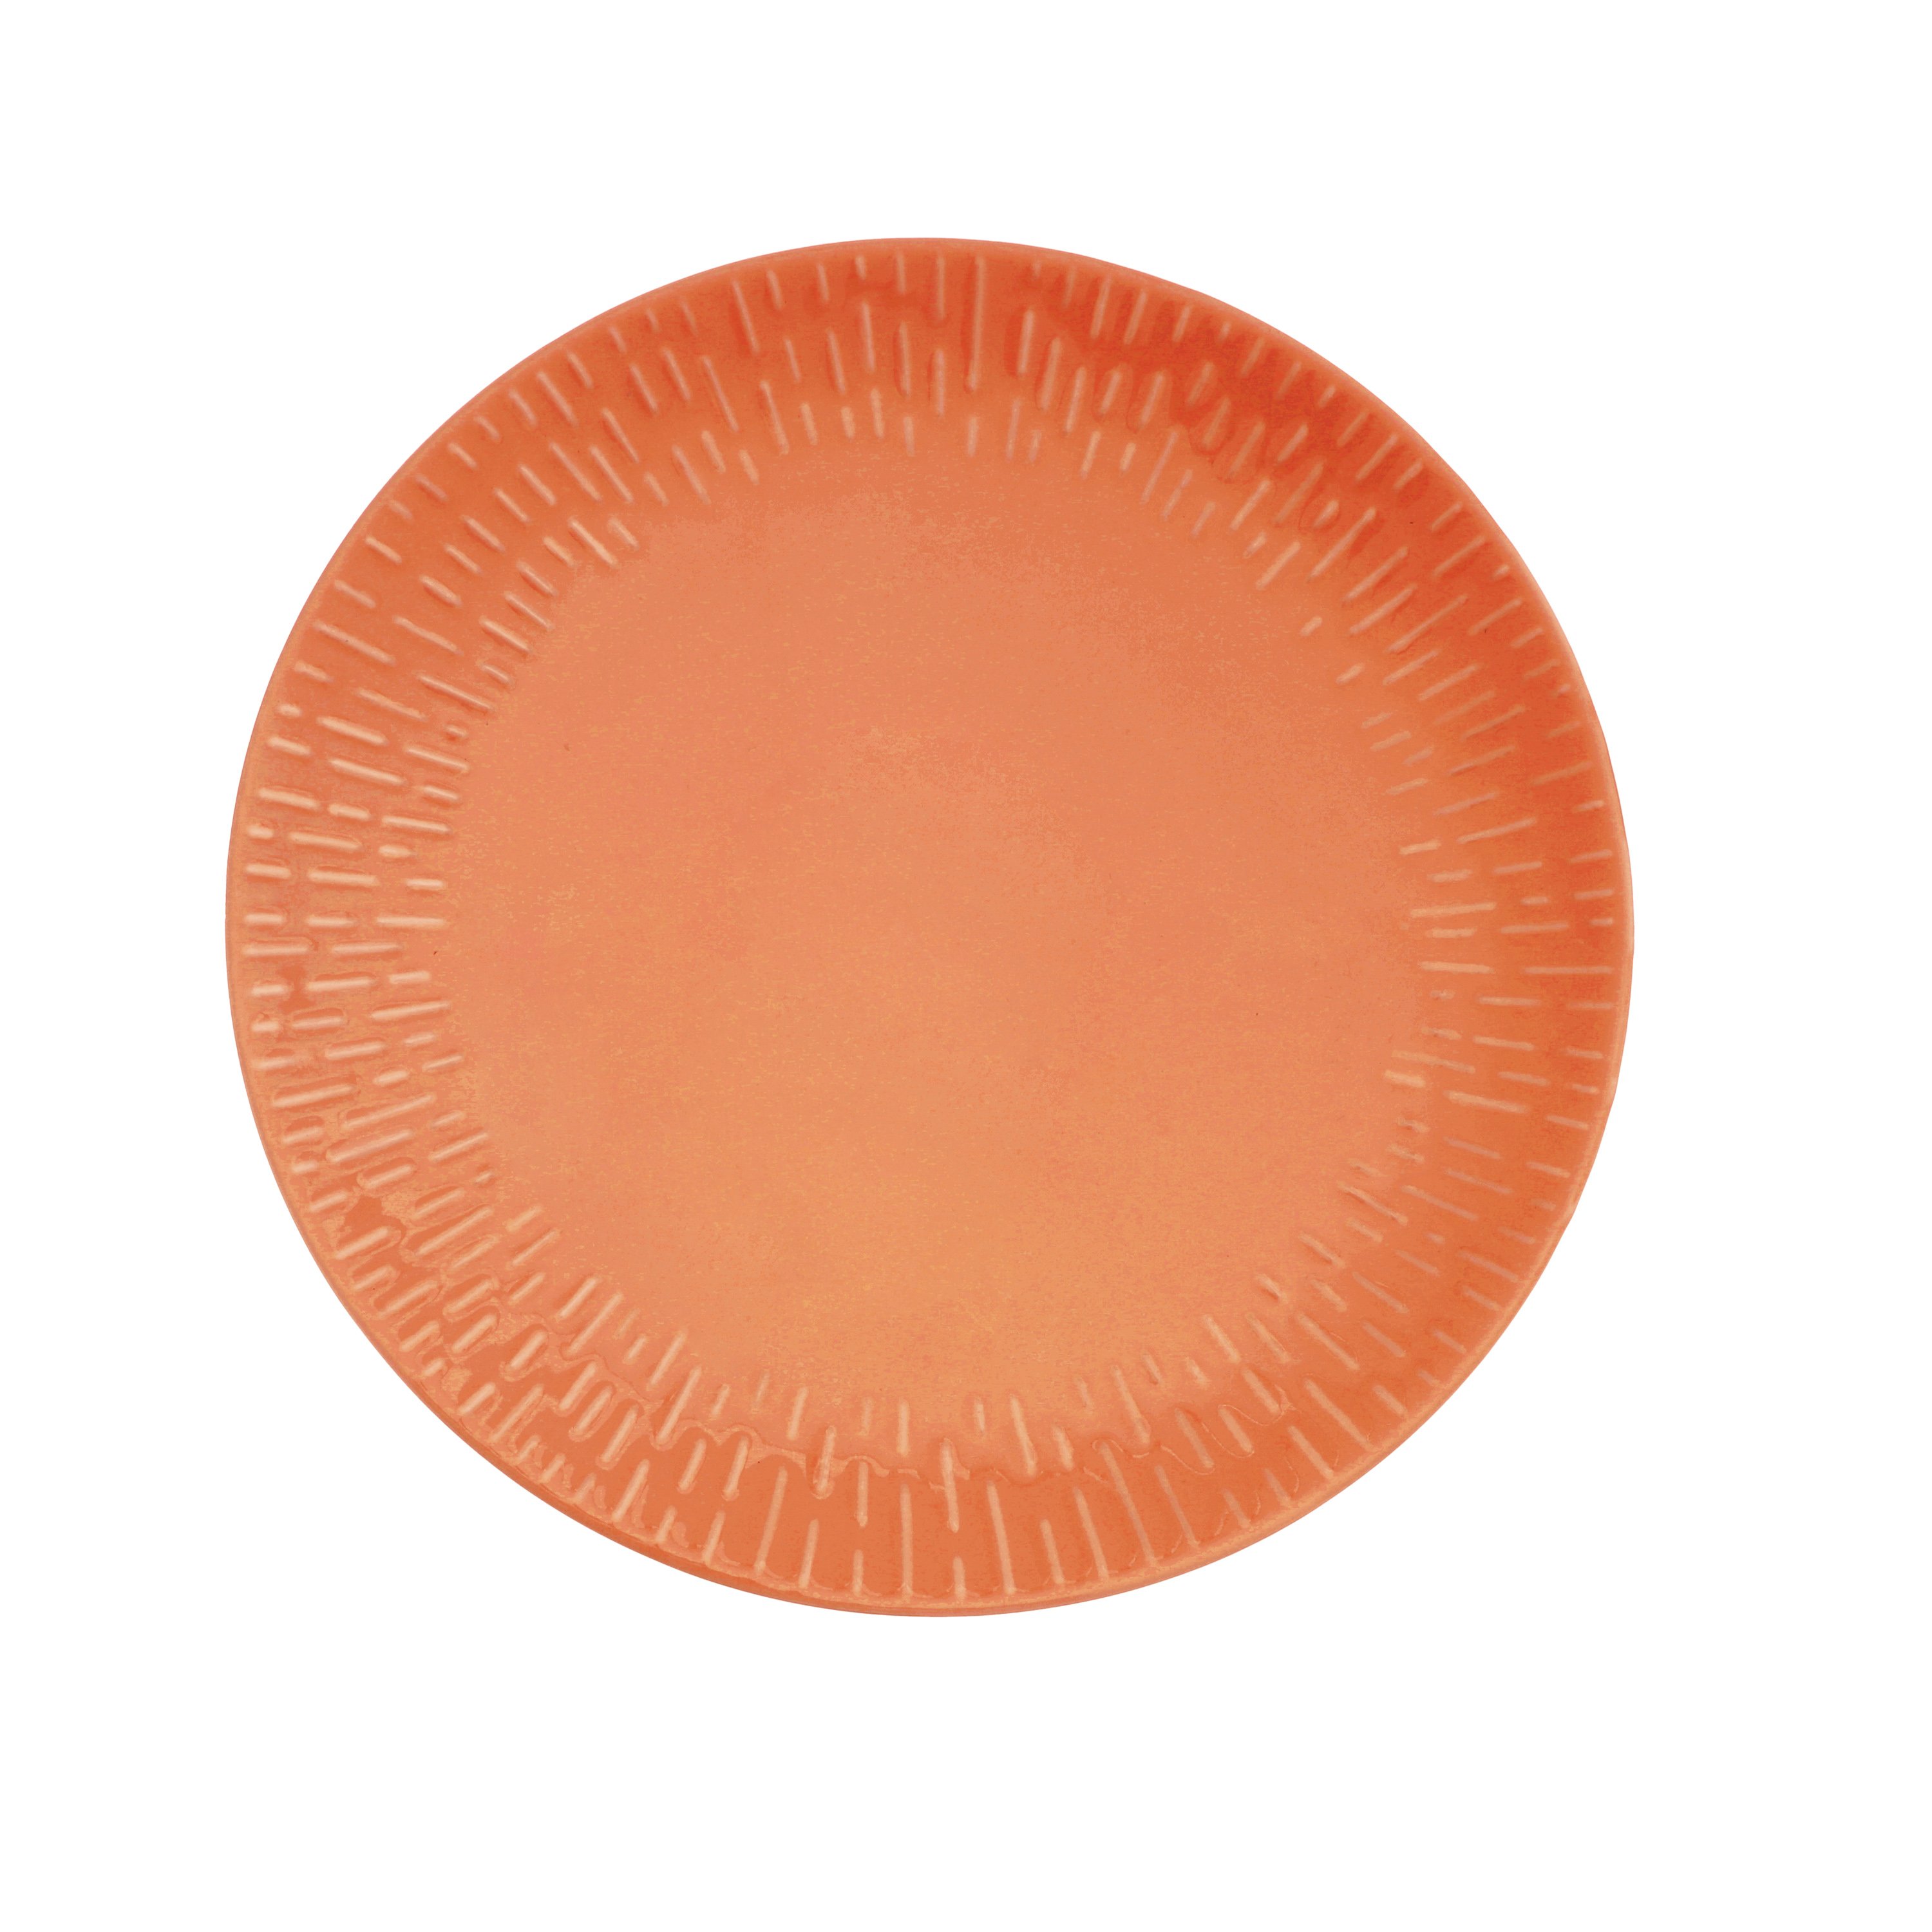 Aida - Life in Colour - Confetti Apricot dinner plate w/relief porcelain (13323) - Hjemme og kjøkken